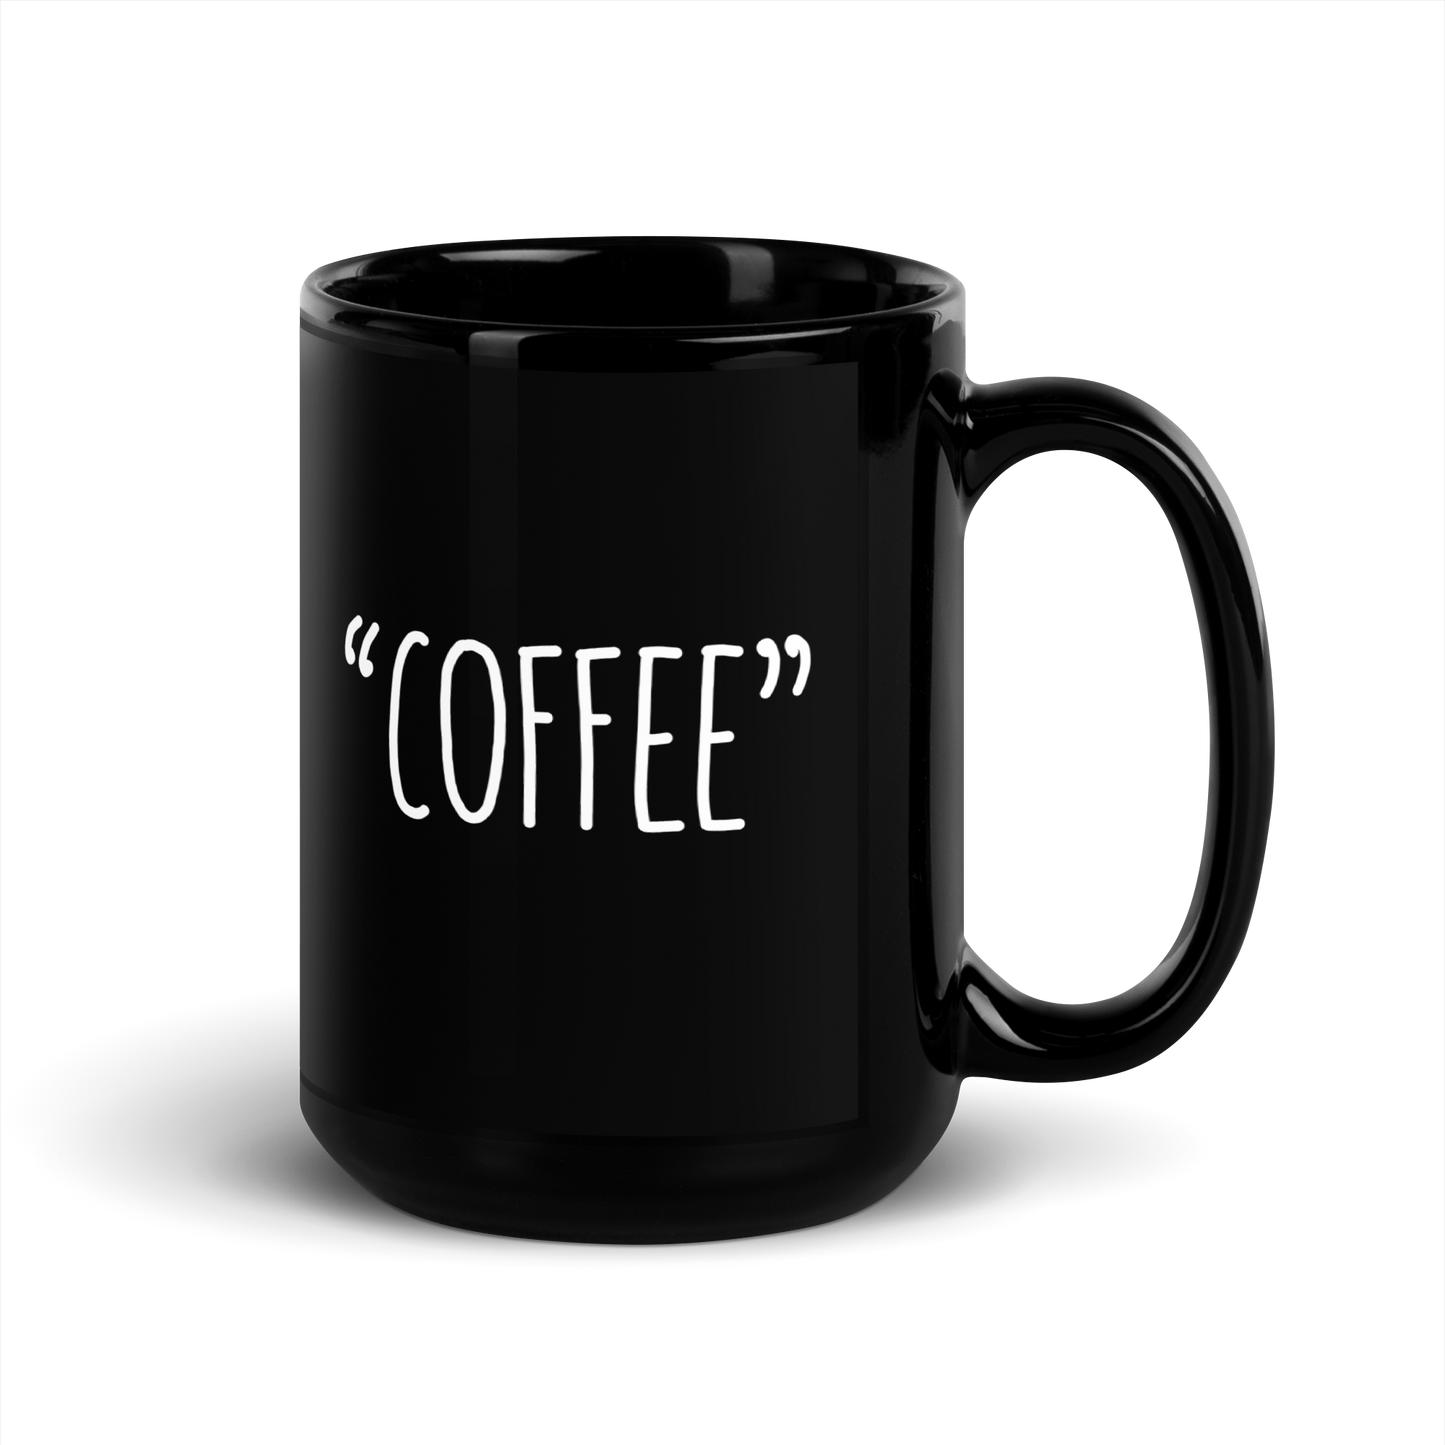 "COFFEE" - Funny Mug